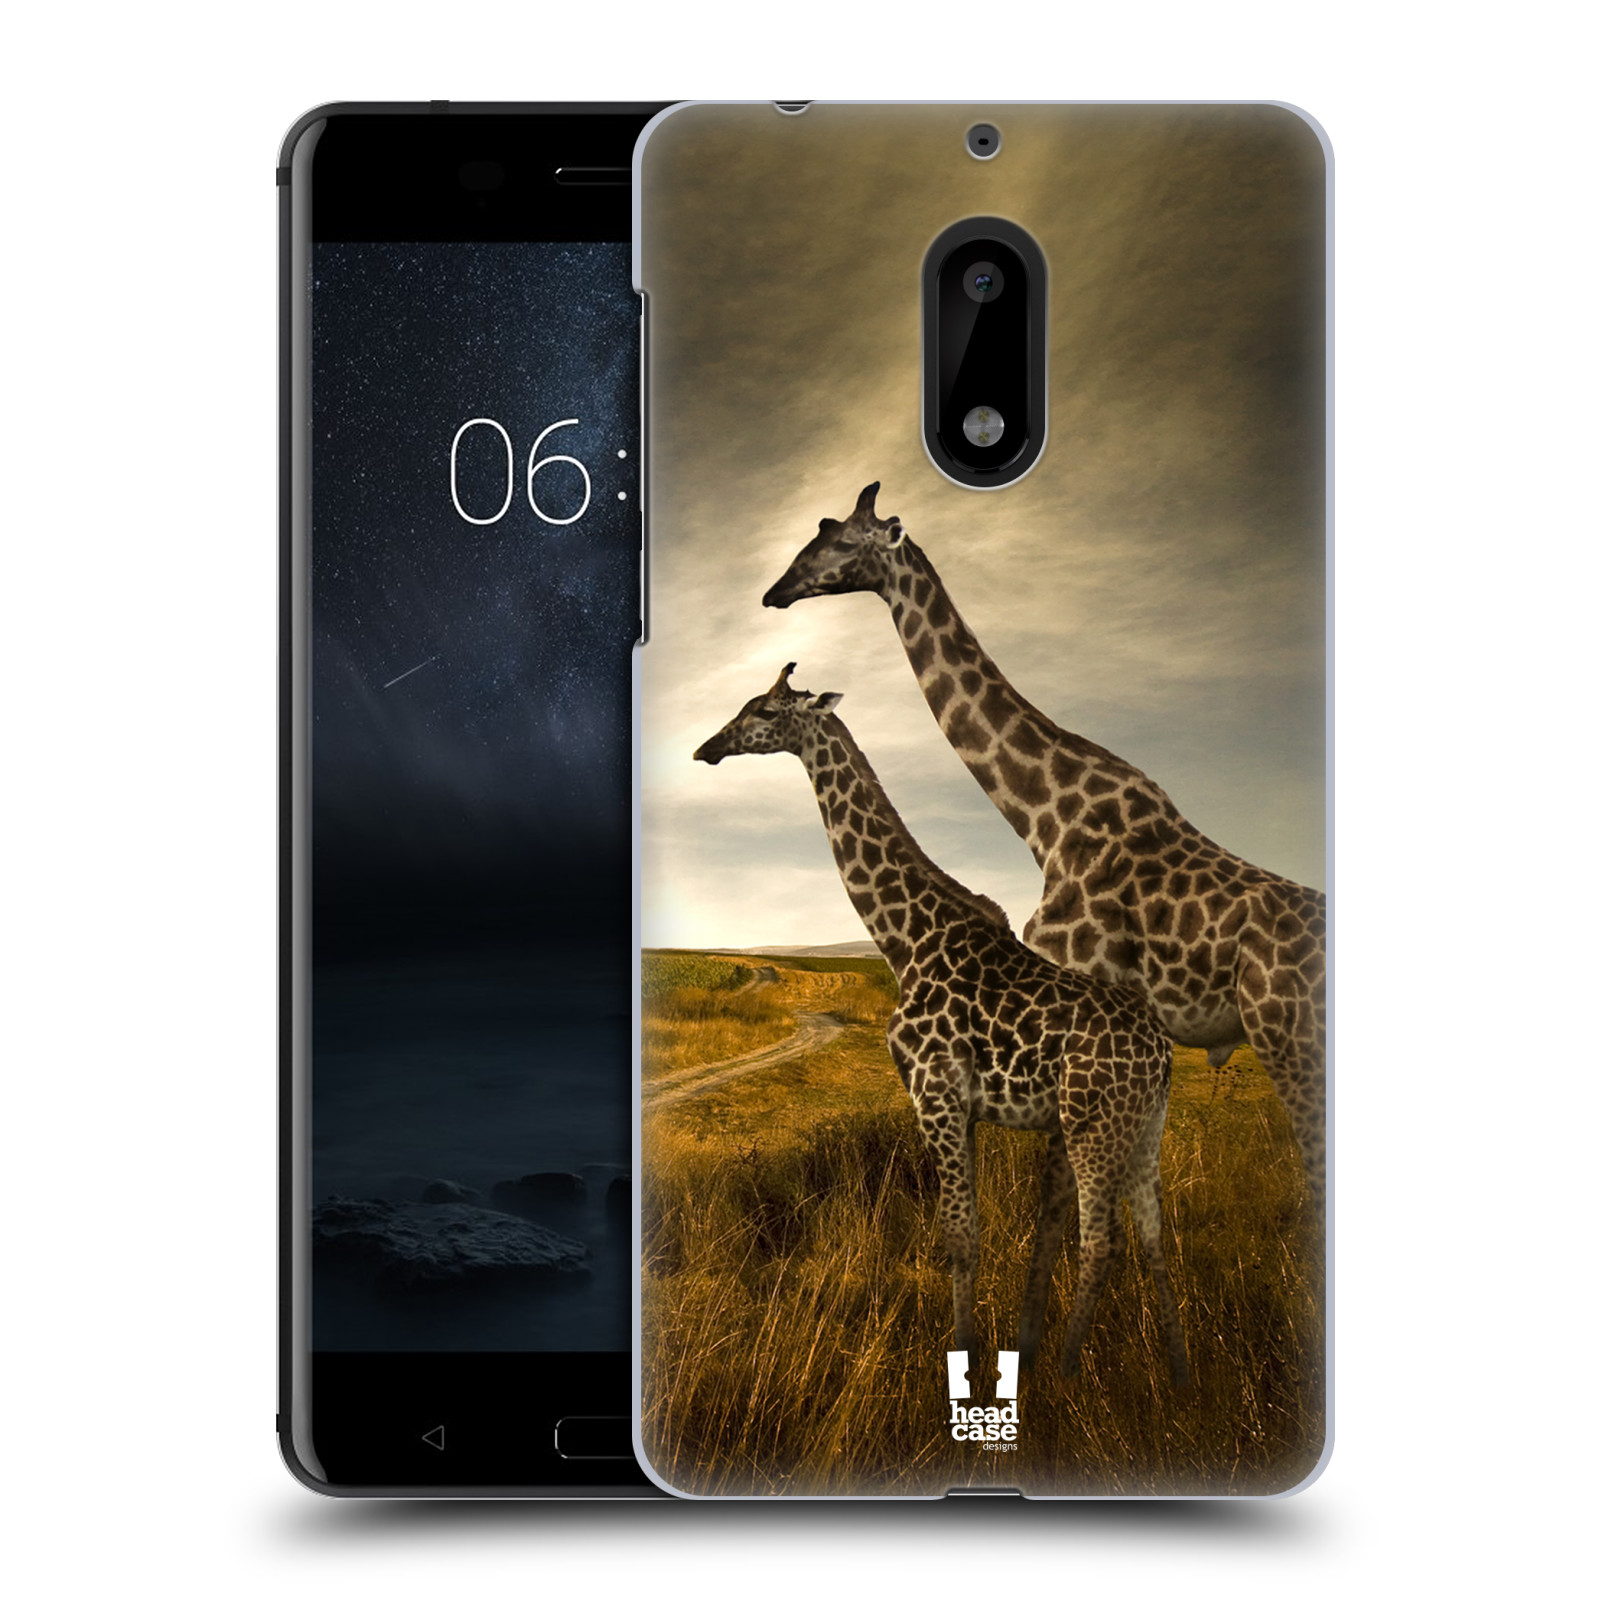 HEAD CASE plastový obal na mobil Nokia 6 vzor Divočina, Divoký život a zvířata foto AFRIKA ŽIRAFY VÝHLED